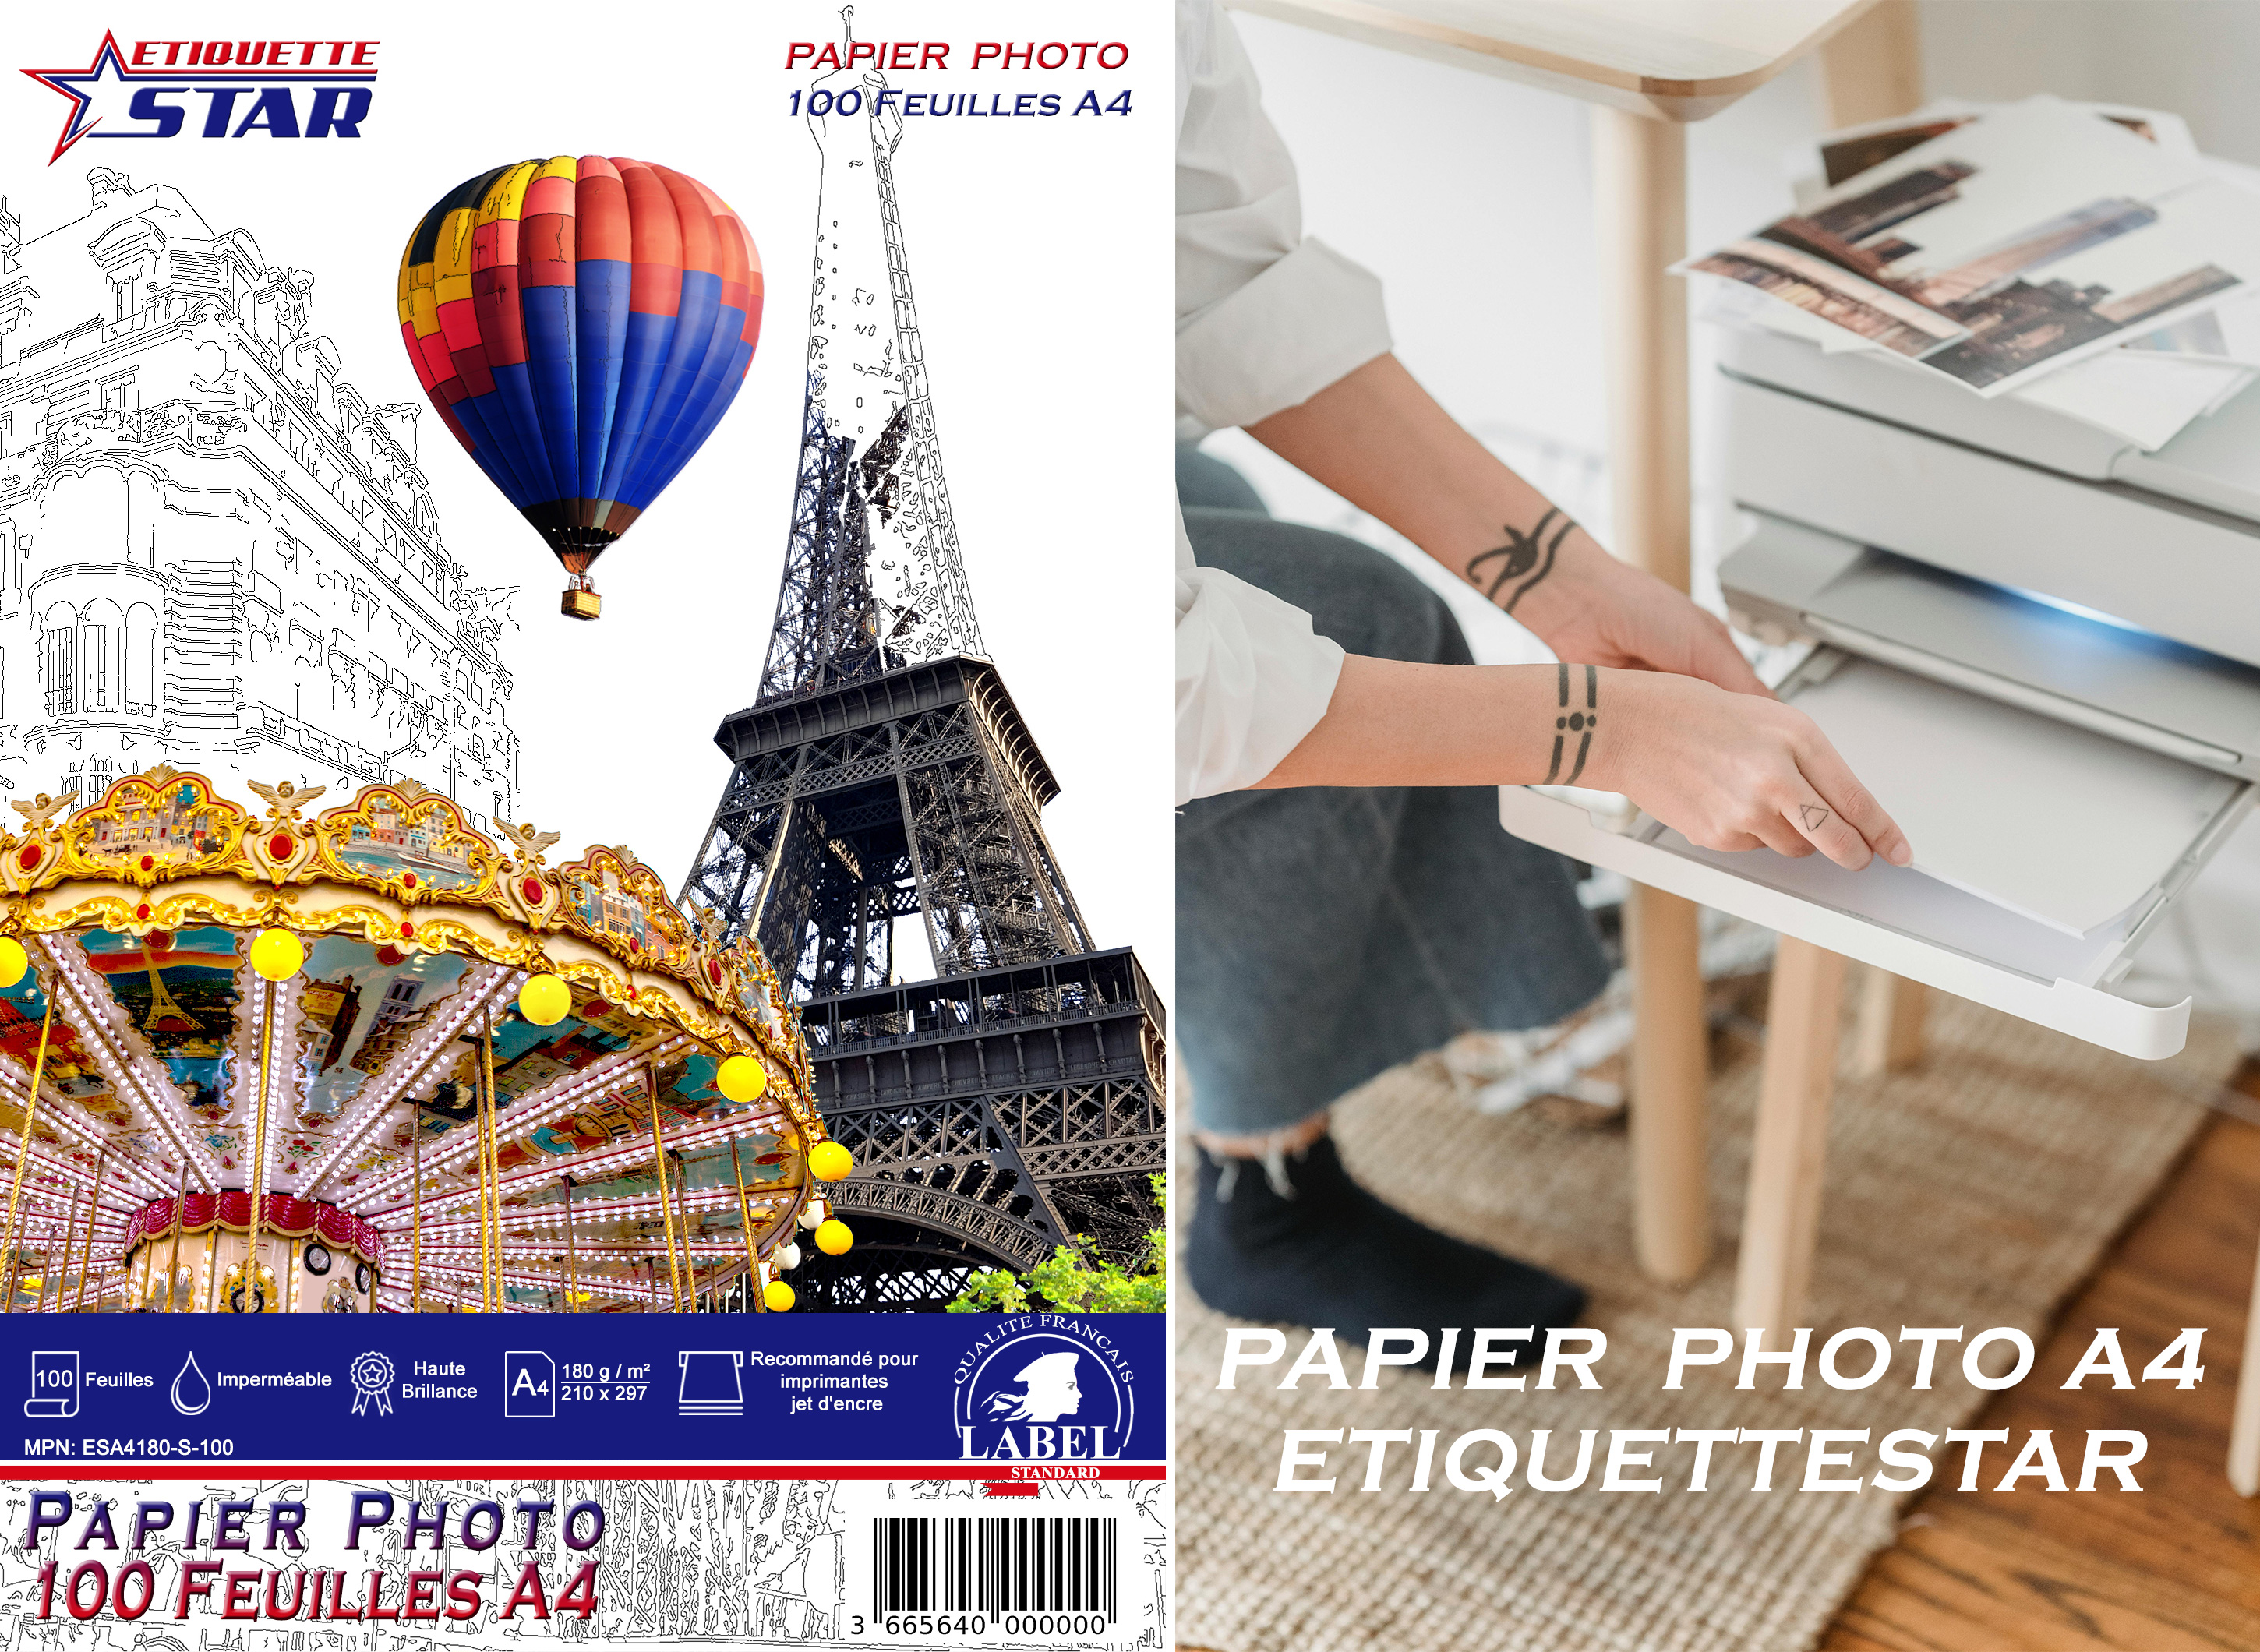 Papier Photo A4 EtiquetteStar 180g - 100 Feuilles Premium Haute Brillance